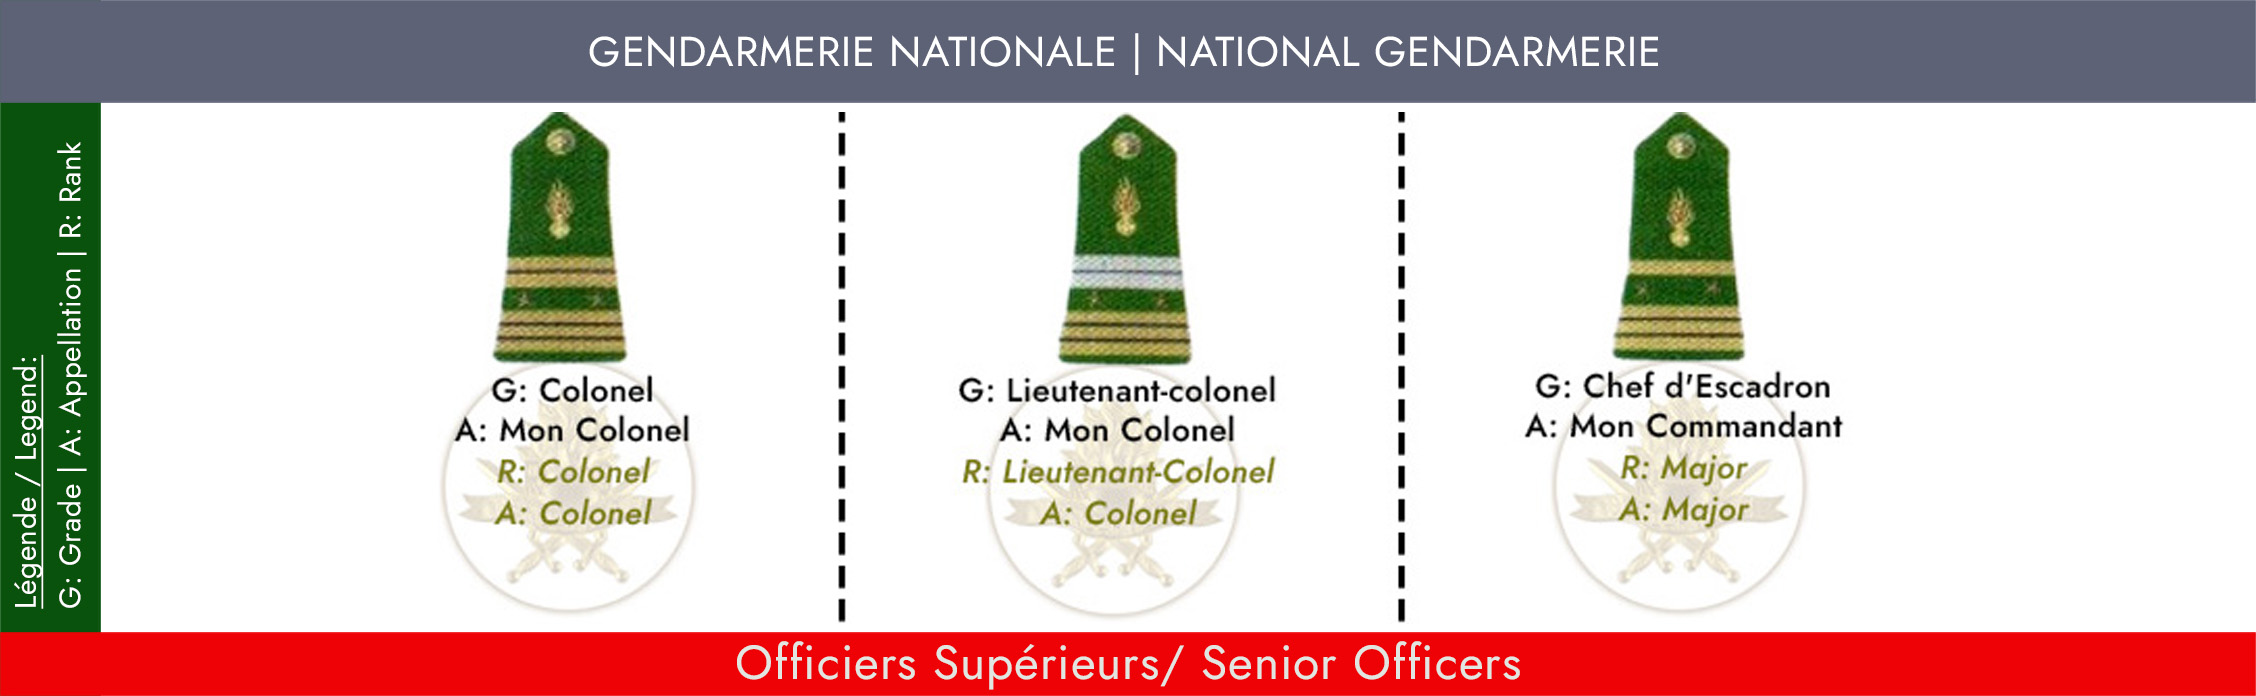 GRADES ET APPELLATIONS OFFICIER SUPERIEURS GENDARMERIE NATIONALE